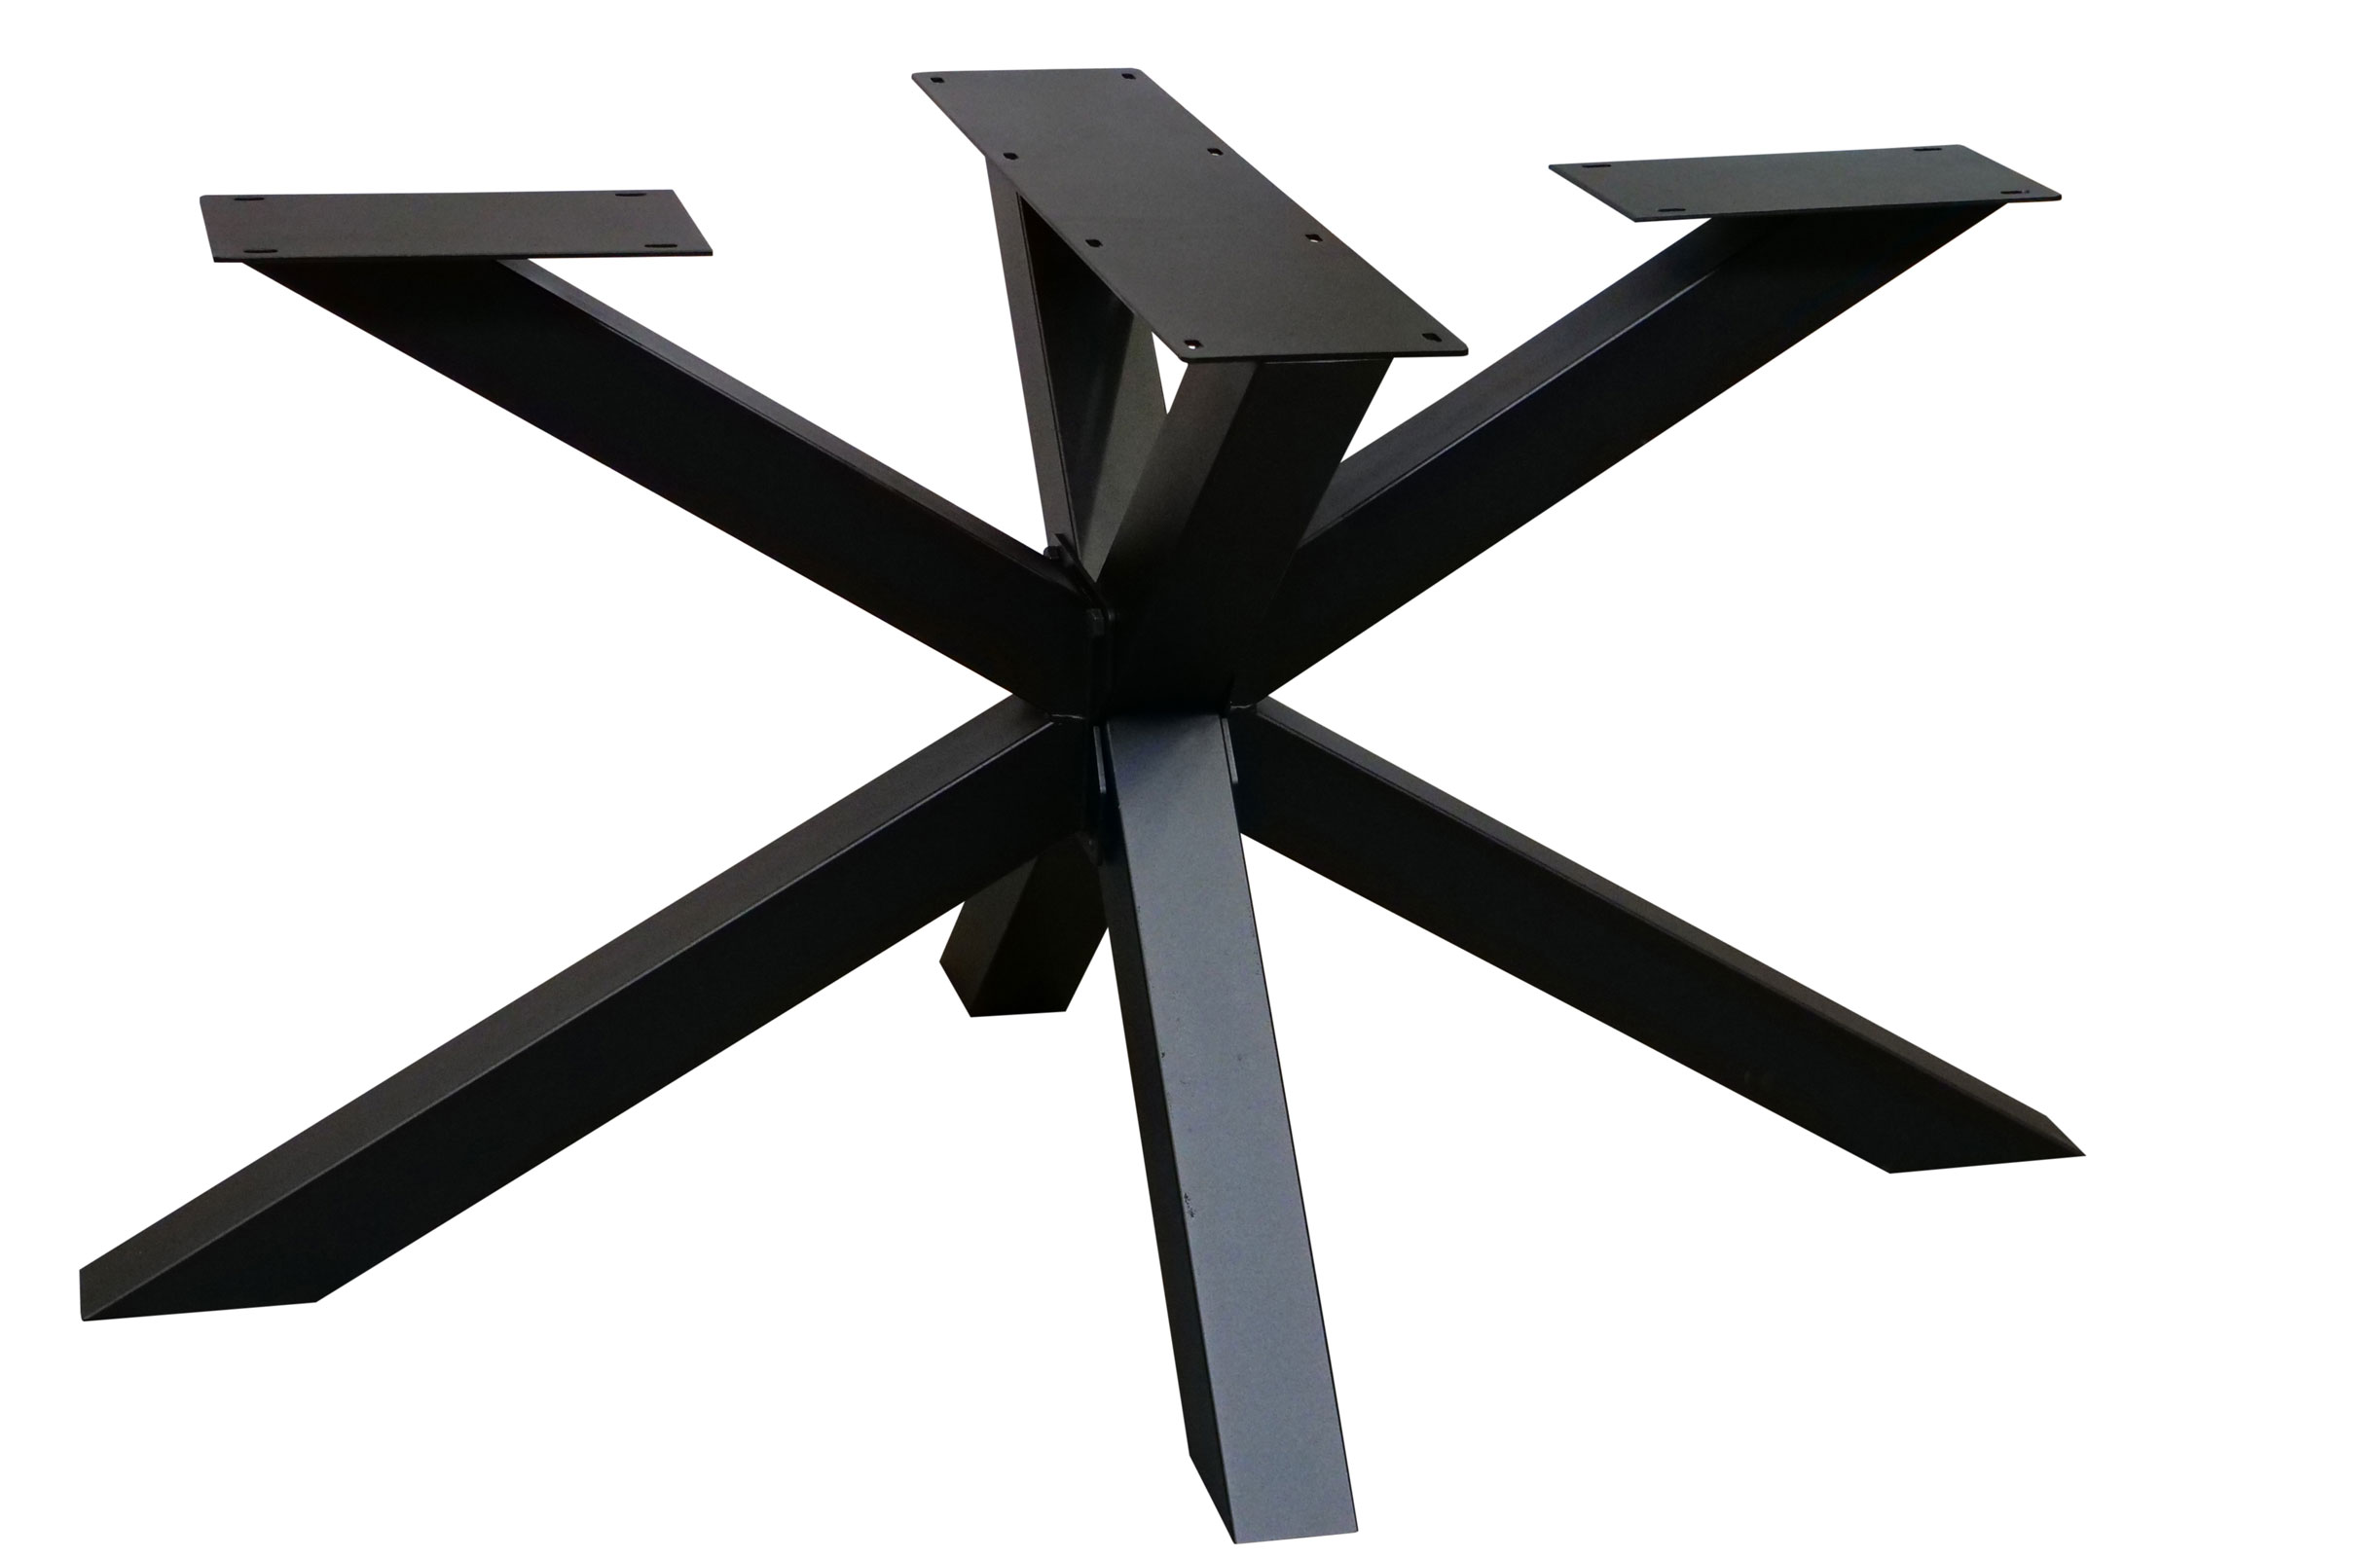 Edle Tischuntergestelle aus Metall Spider modern Stabiles und modernes Gestell für Ihre edle Massivholz-Tischplatte - moderne Spider-Form in verschiedenen Dimensionen & Farben